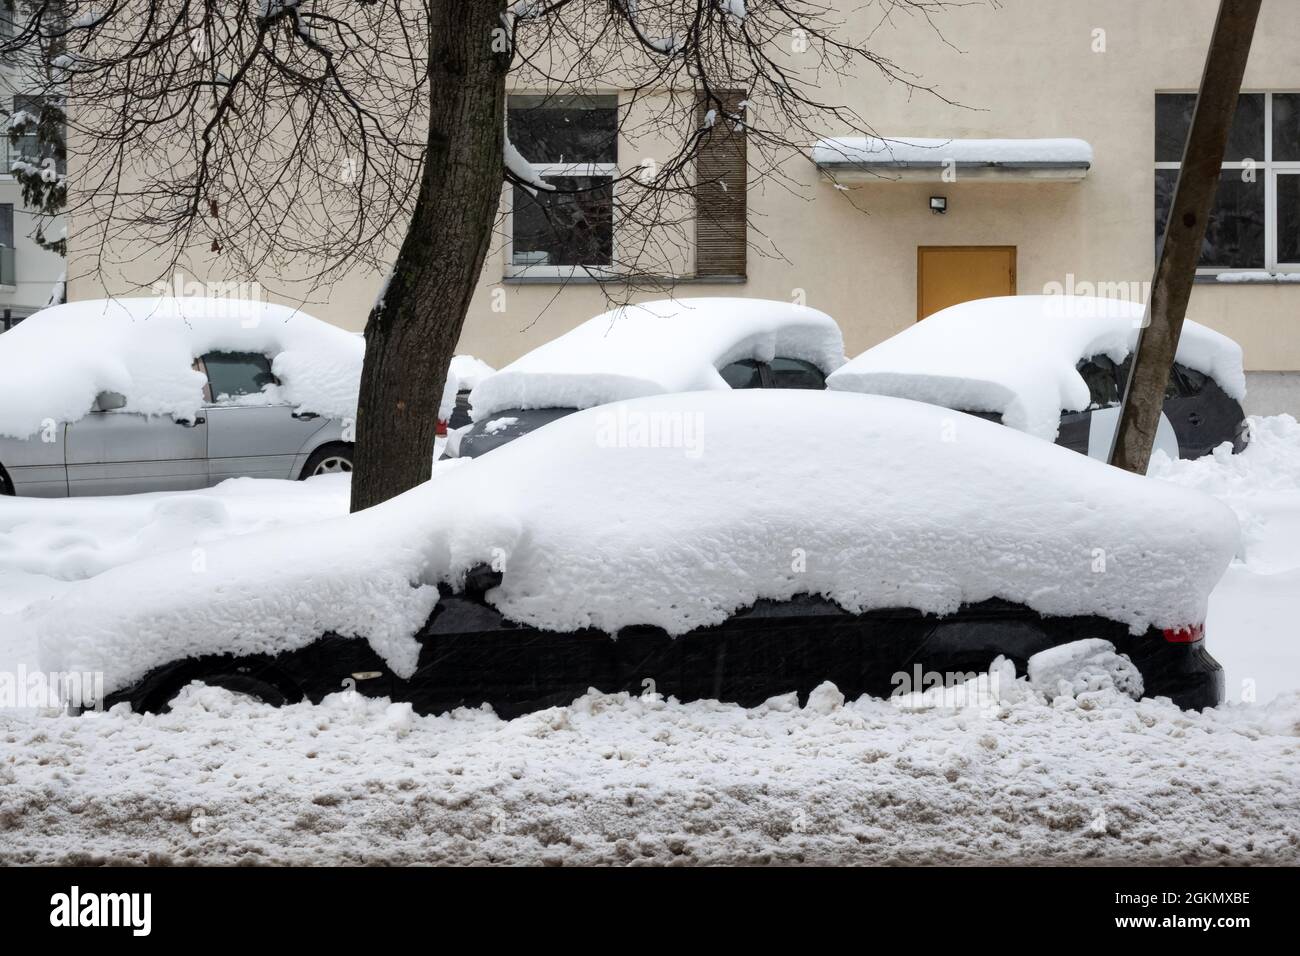 Auto unter dicken Schneedecke nach Sturm isoliert auf weißem Hintergrund  Stockfotografie - Alamy